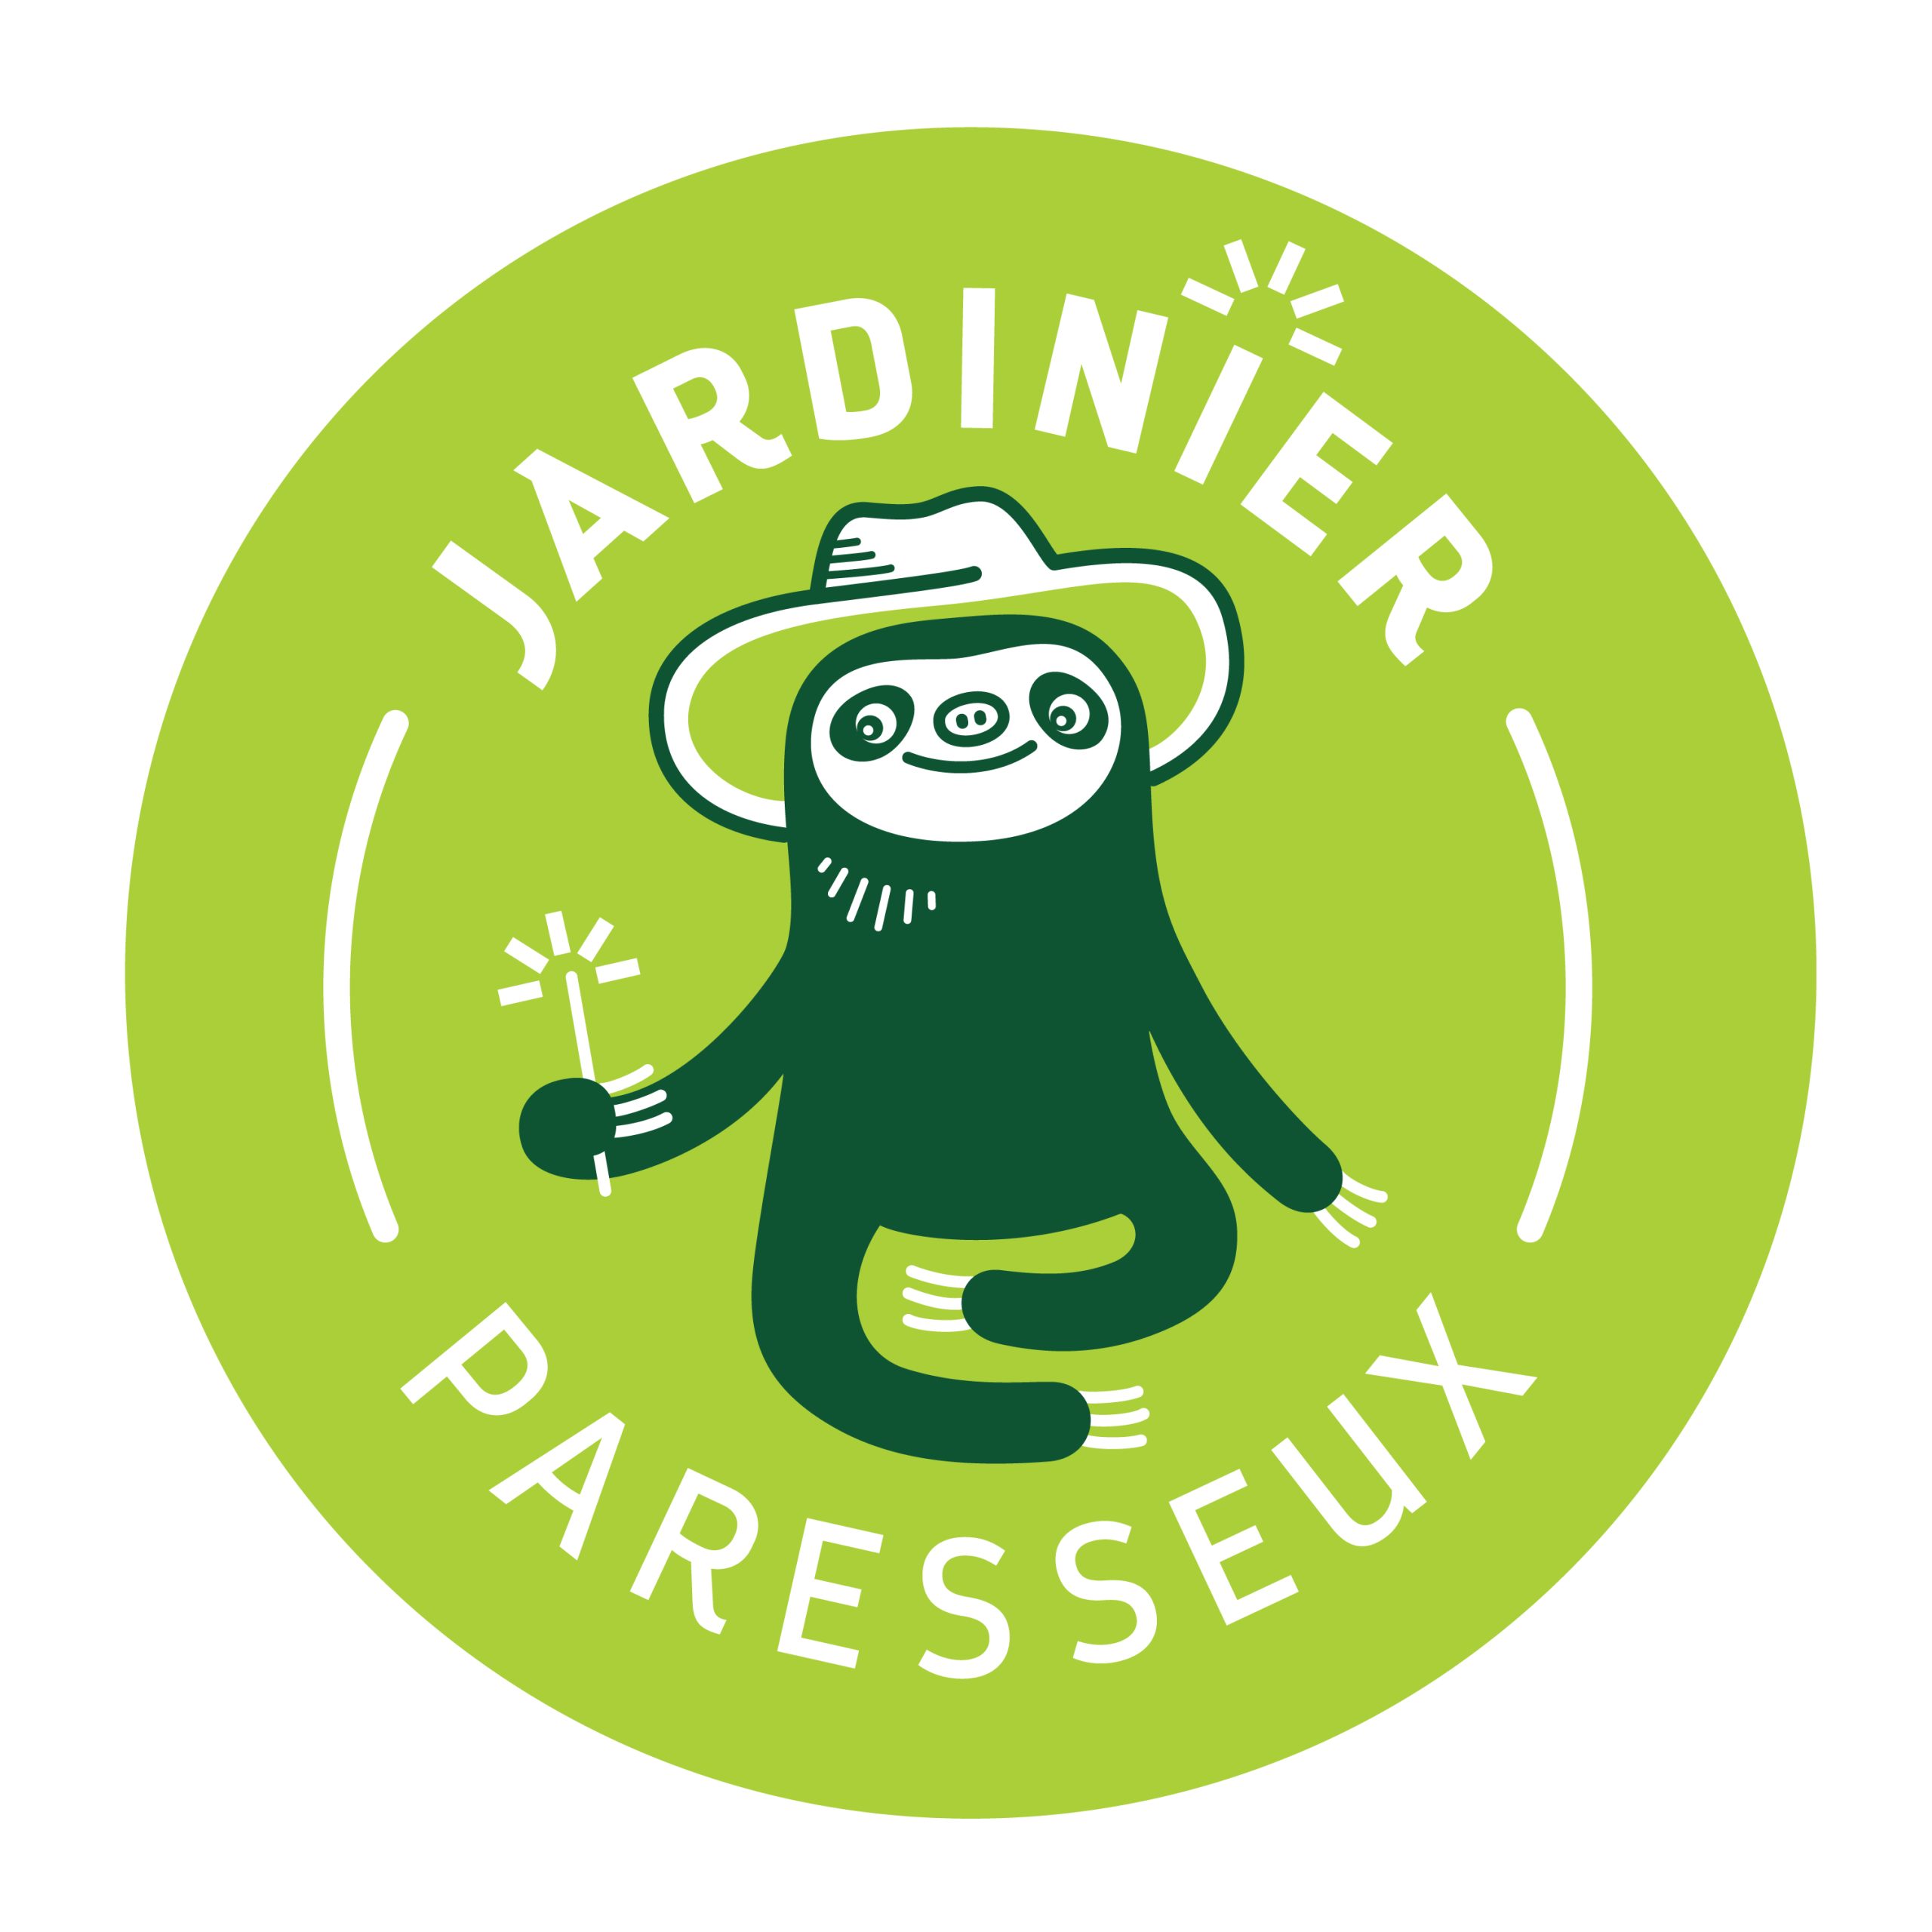 Refonte du site Web du Jardinier paresseux JP__FR_sigle_par_colo_2-scaled